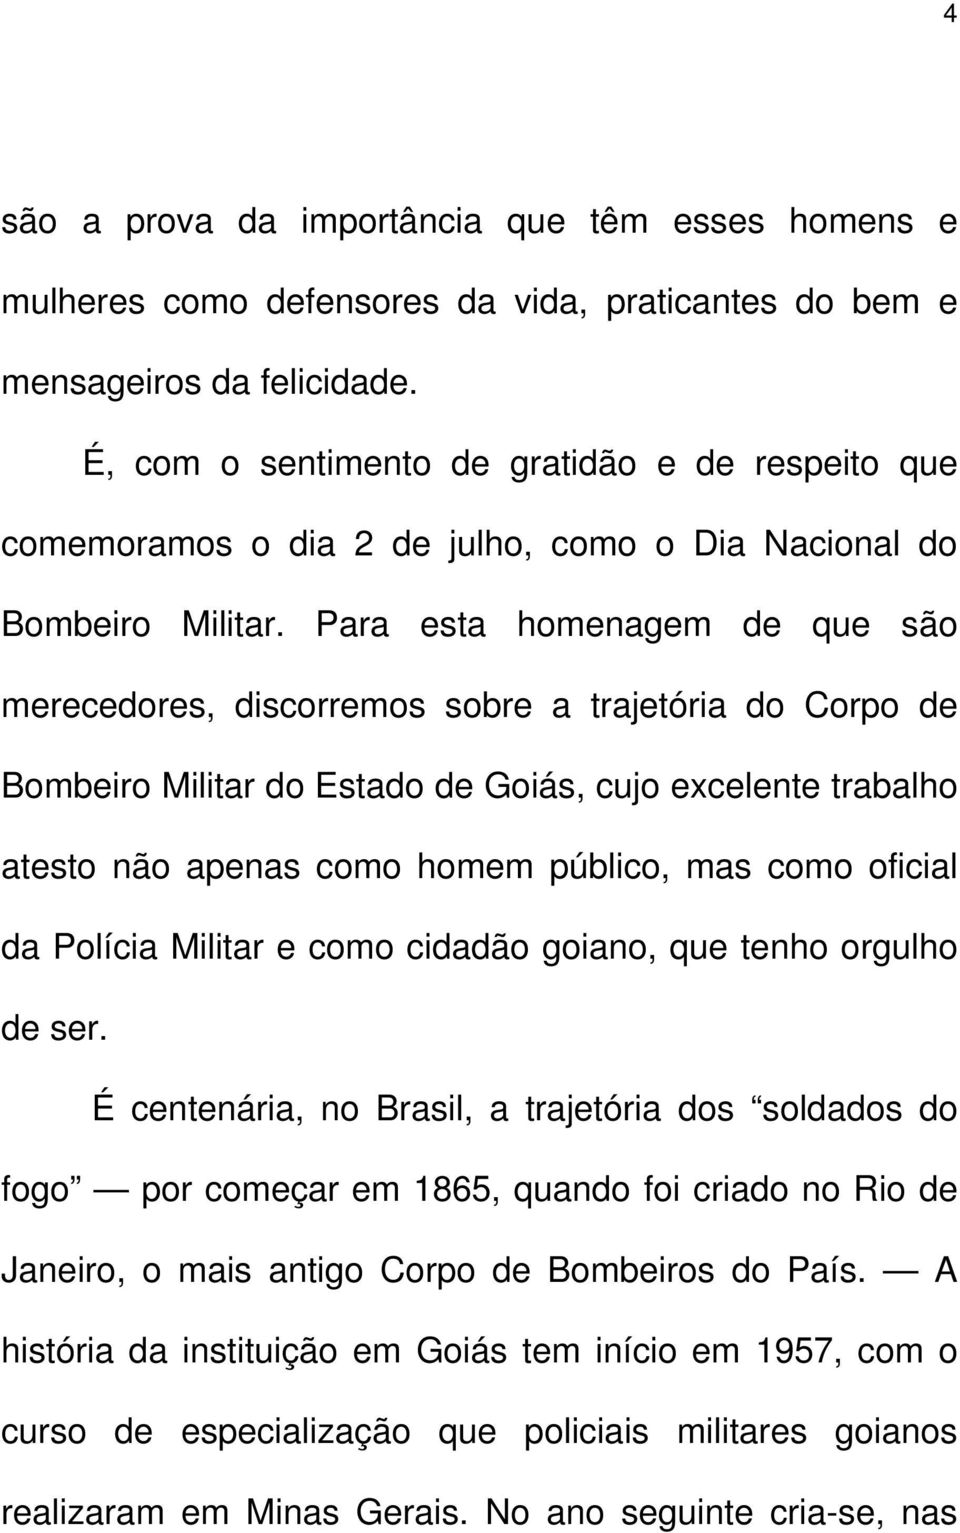 Para esta homenagem de que são merecedores, discorremos sobre a trajetória do Corpo de Bombeiro Militar do Estado de Goiás, cujo excelente trabalho atesto não apenas como homem público, mas como